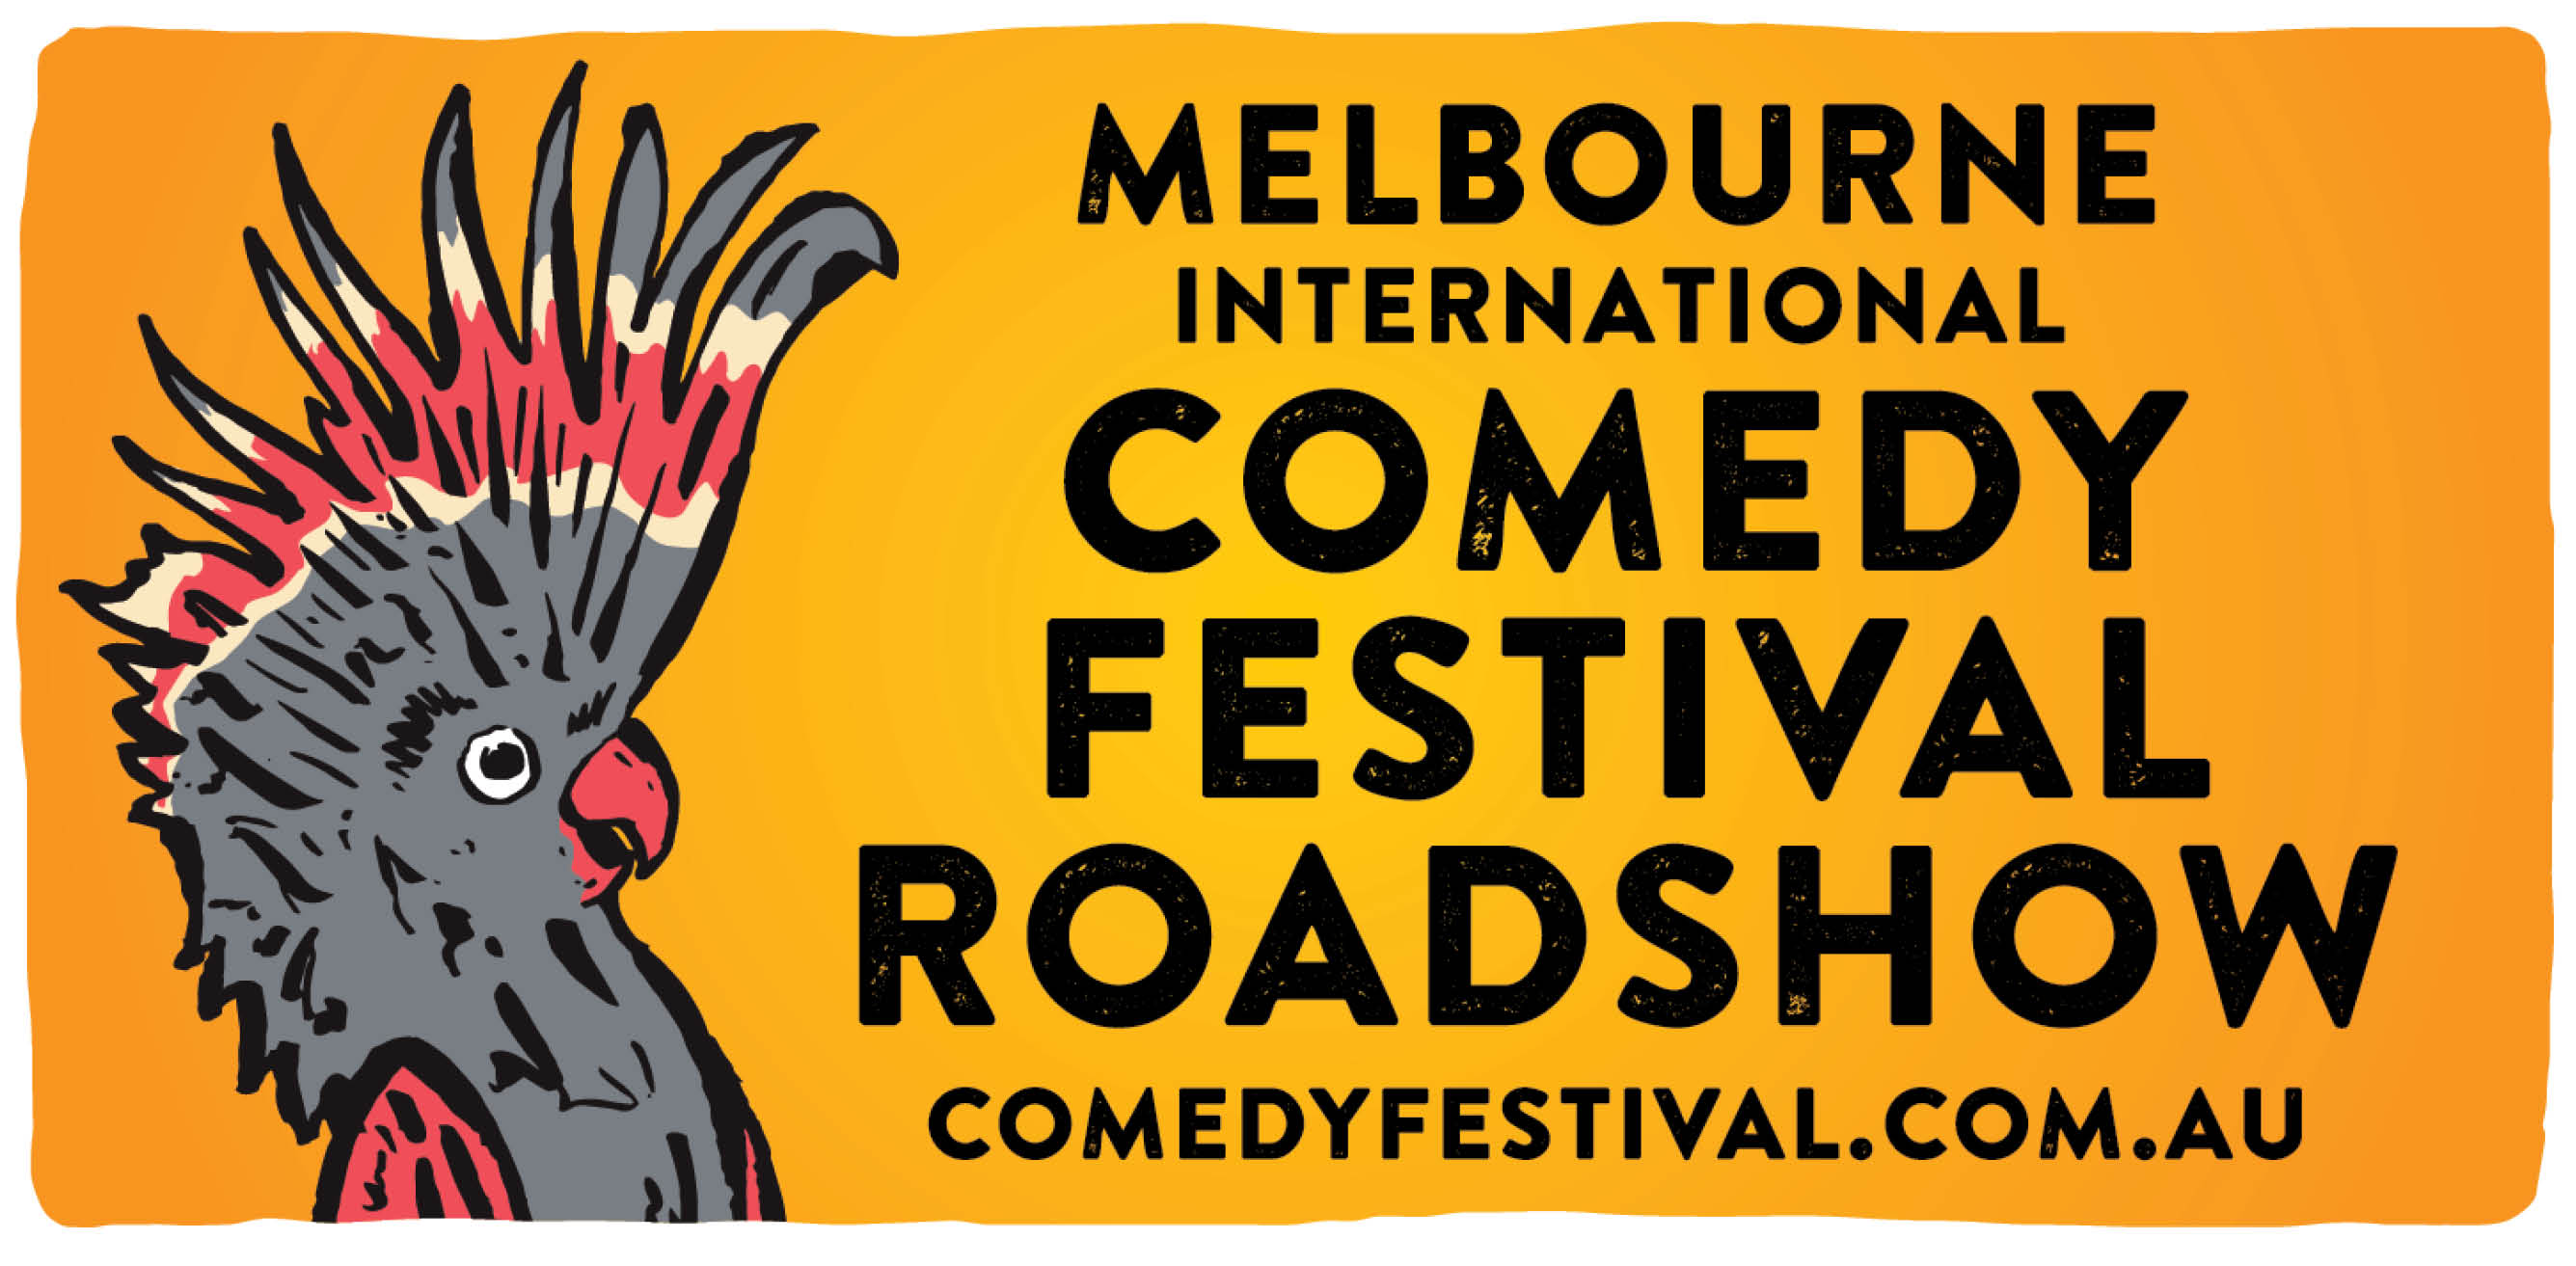 Melbourne International Comedy Festival Roadshow CPAC